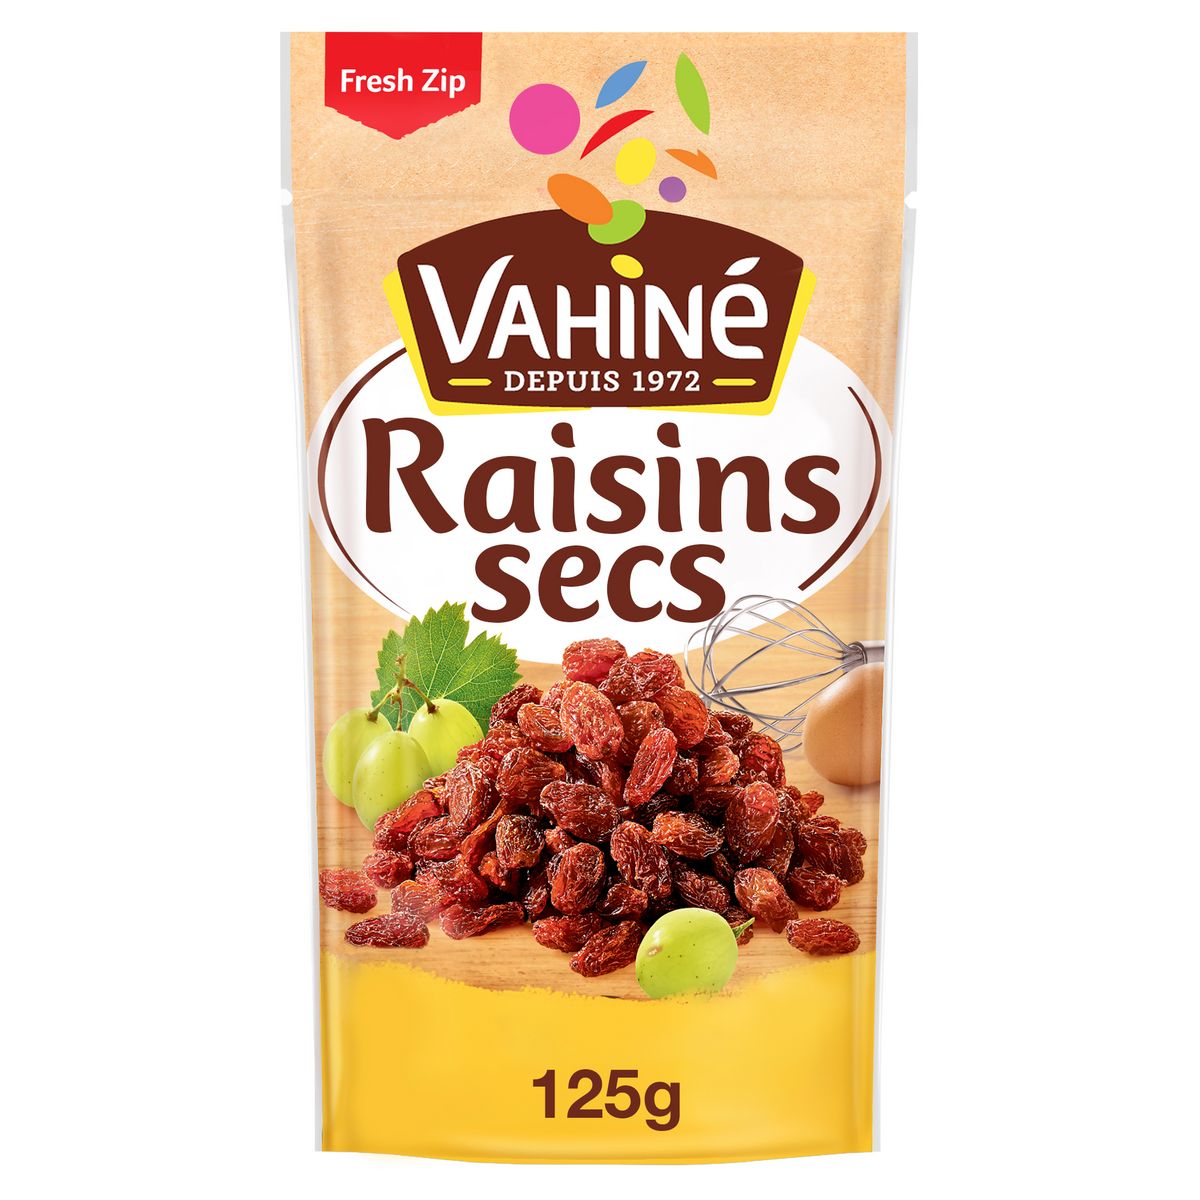 VAHINE Raisins secs 125g